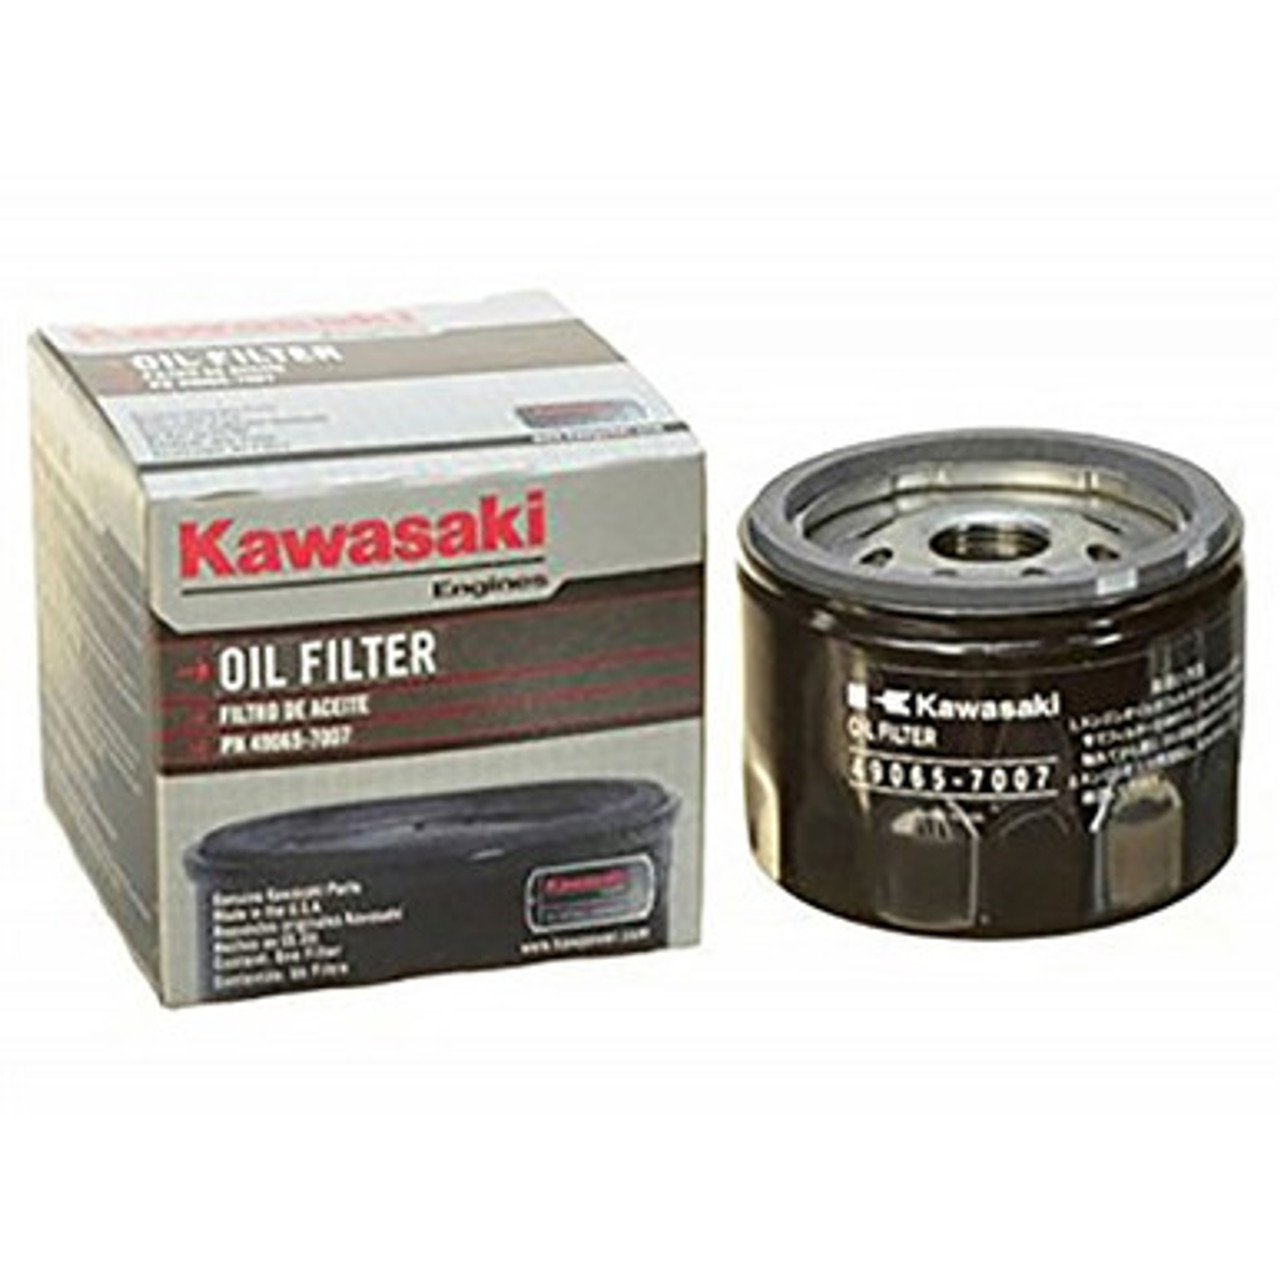 Kawasaki Oil Filter, Kawasaki Replacement Oil Filter